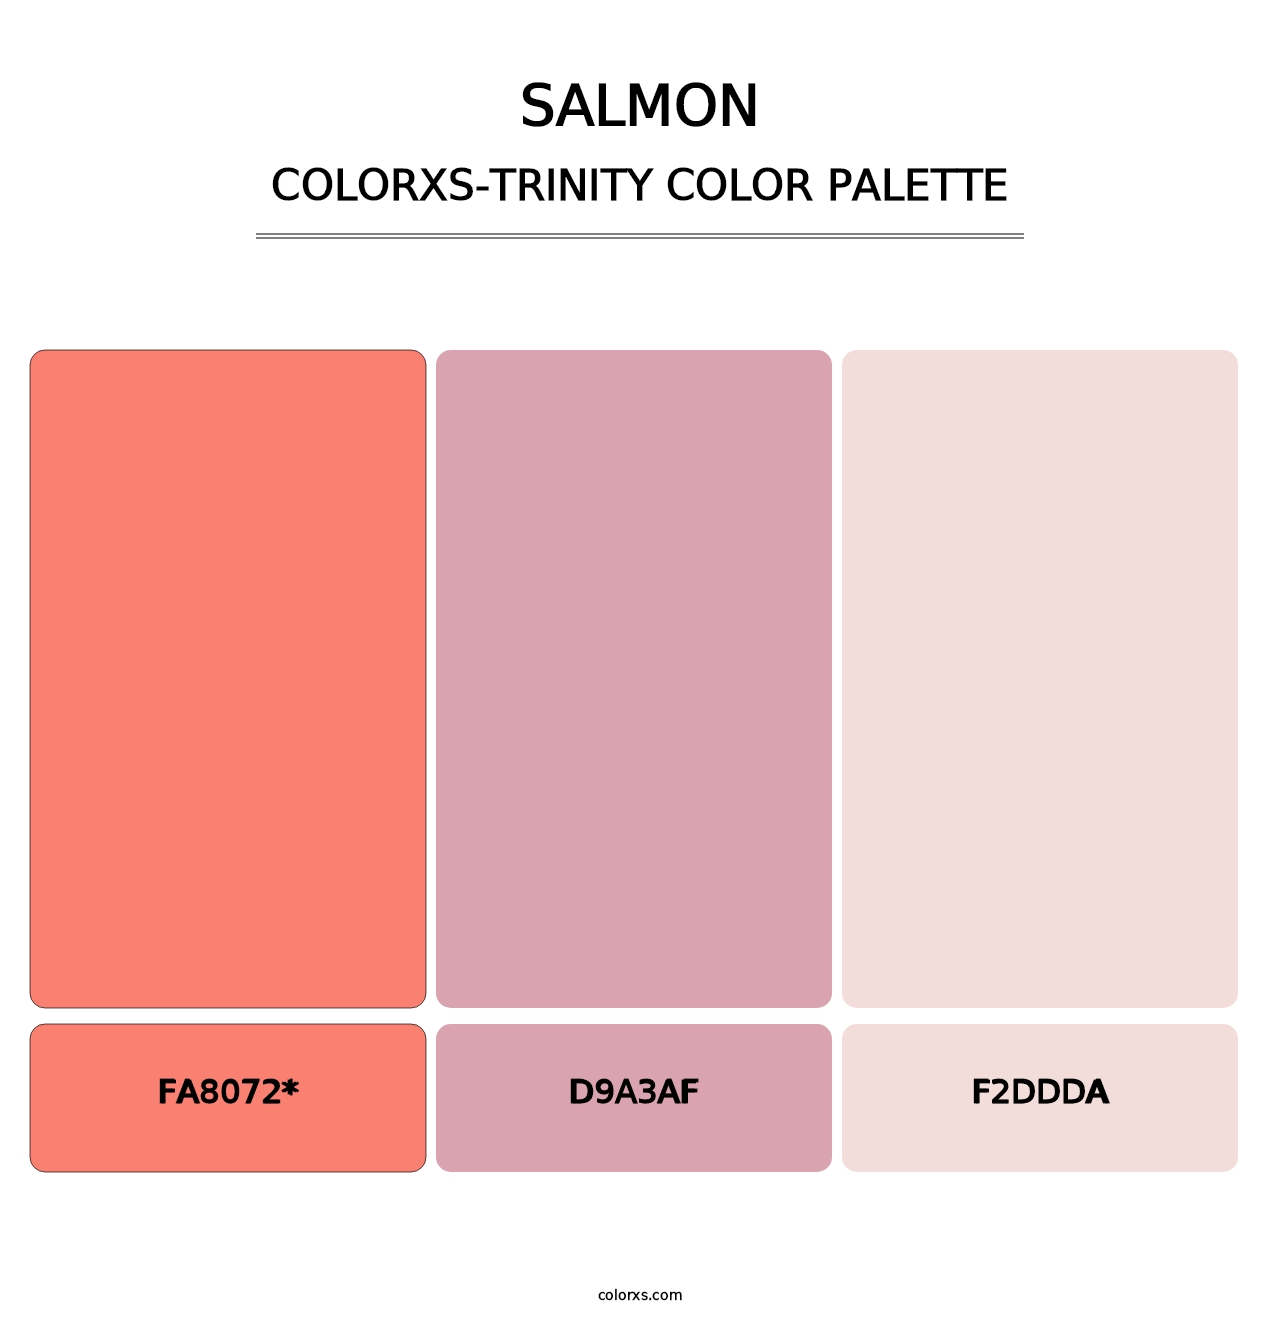 Salmon - Colorxs Trinity Palette